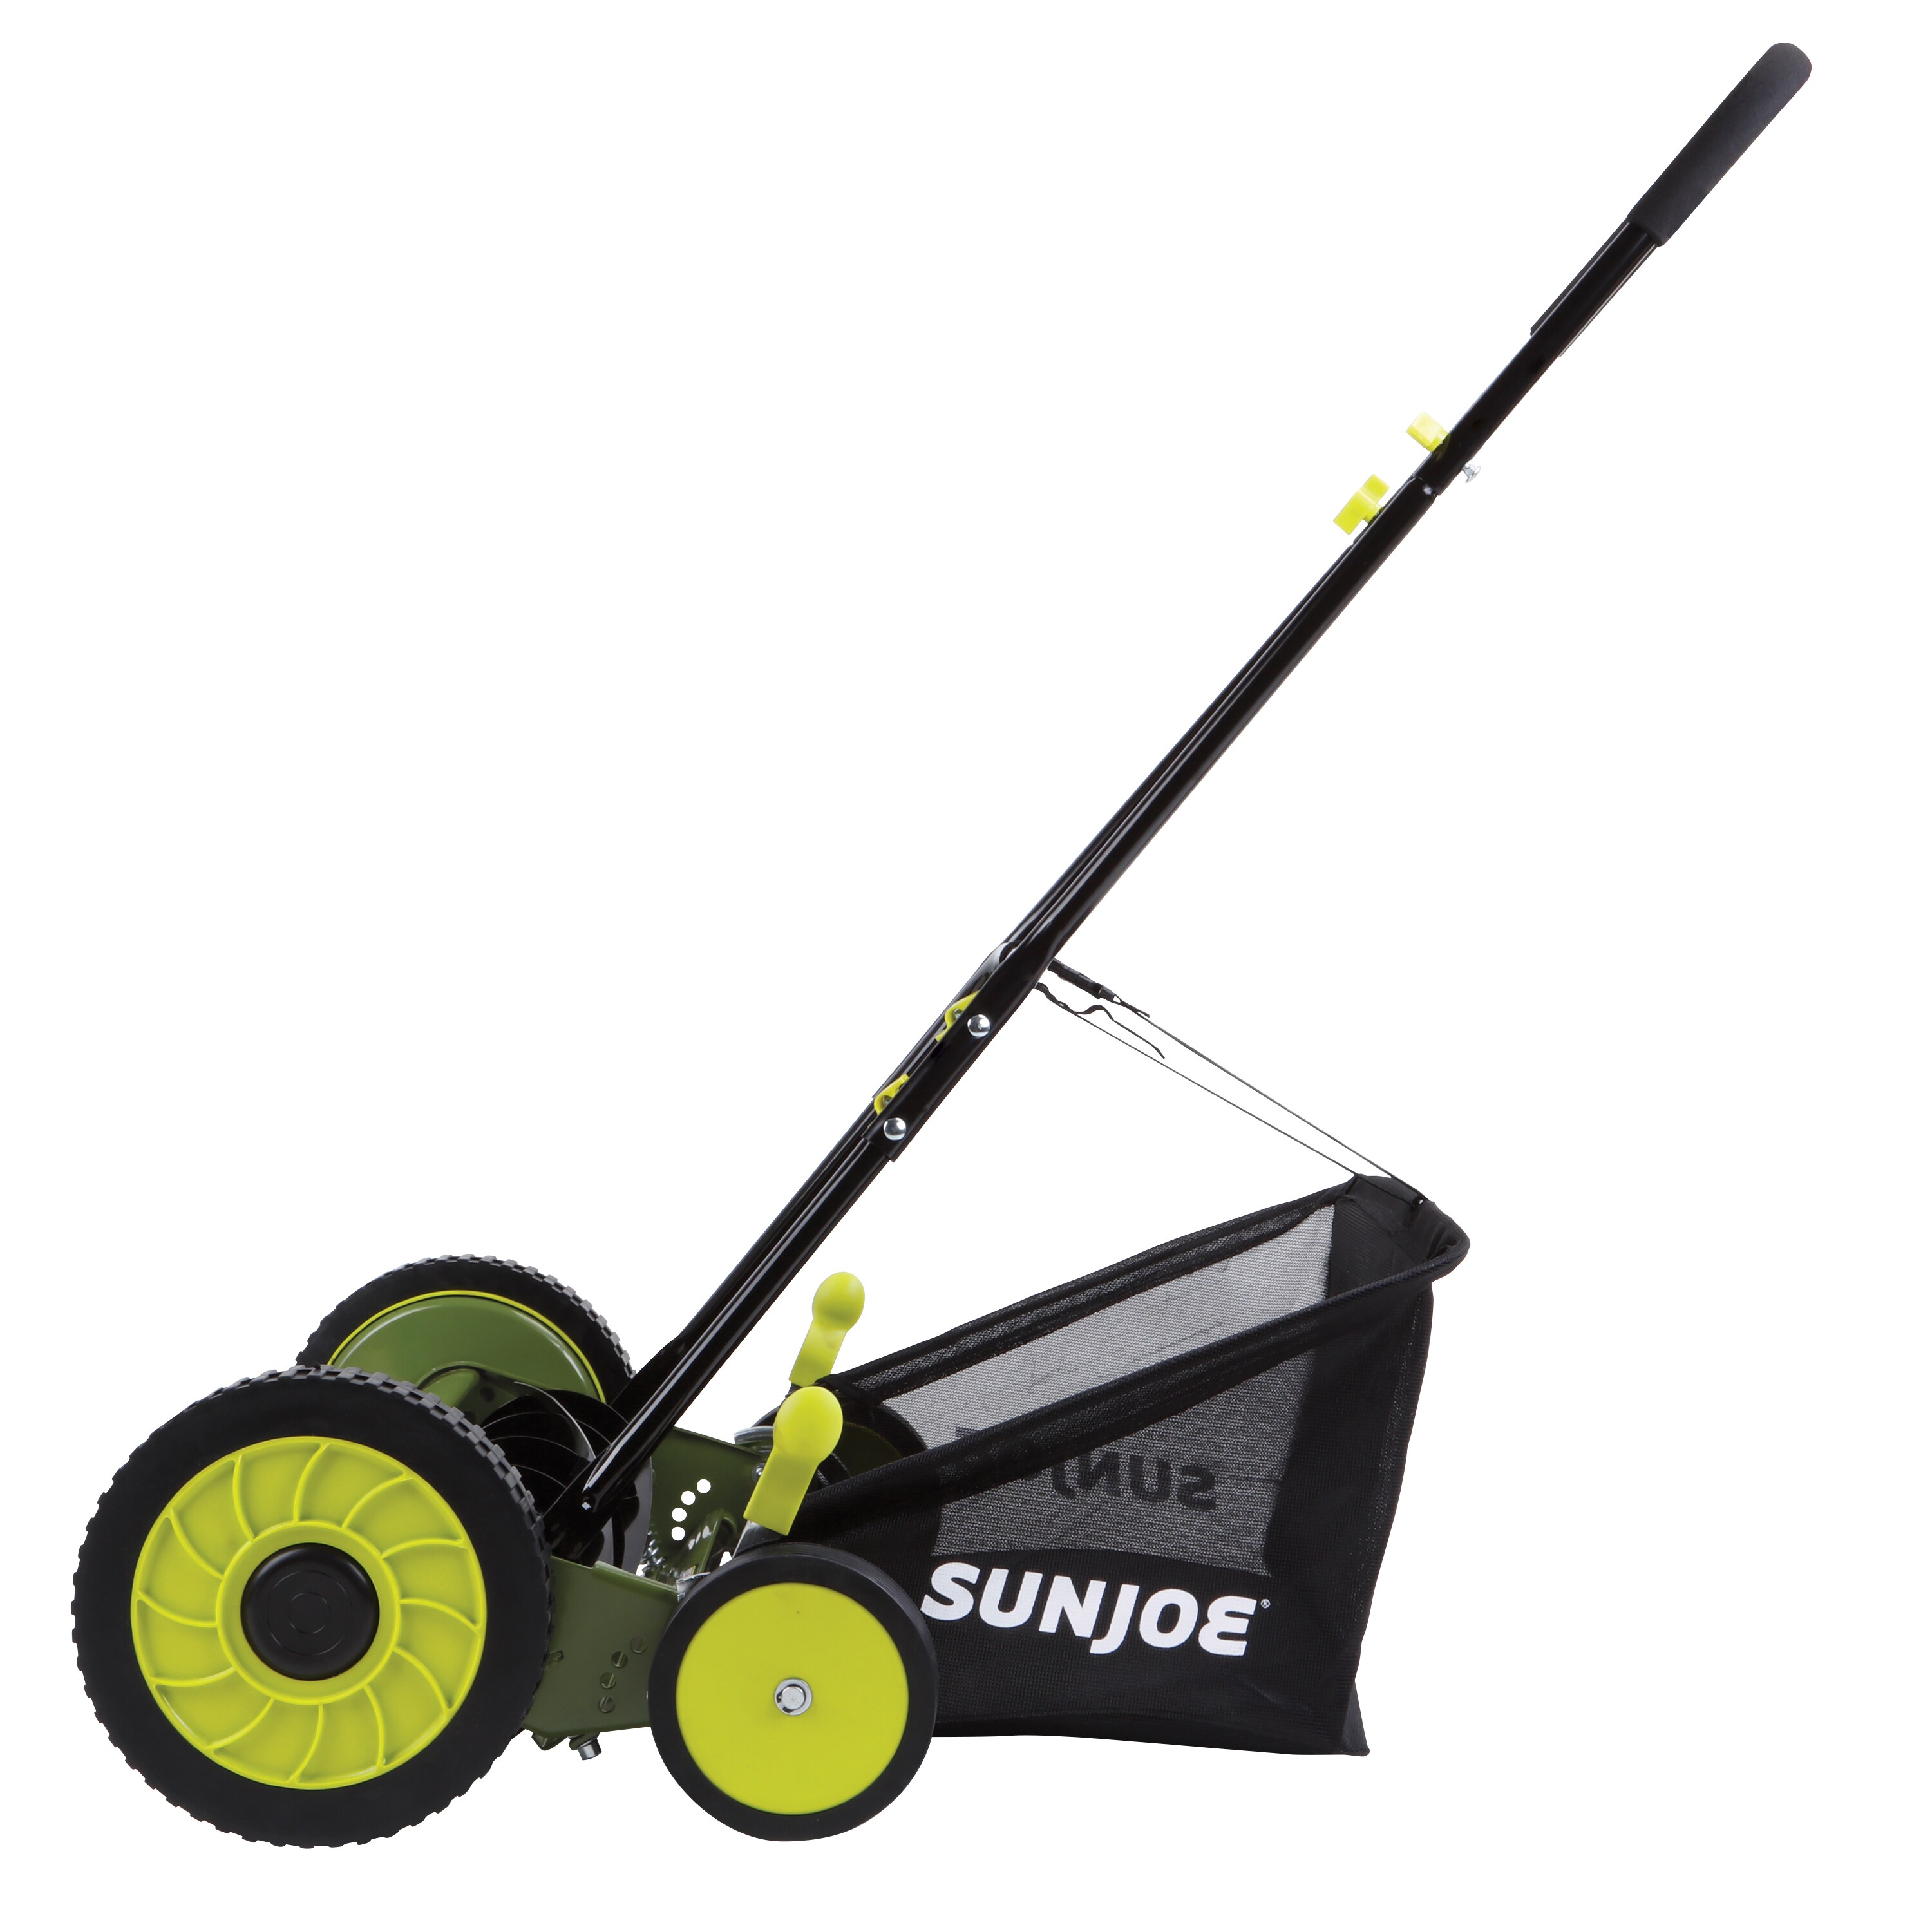 Sun Joe 18-in 5 Reel Lawn Mower